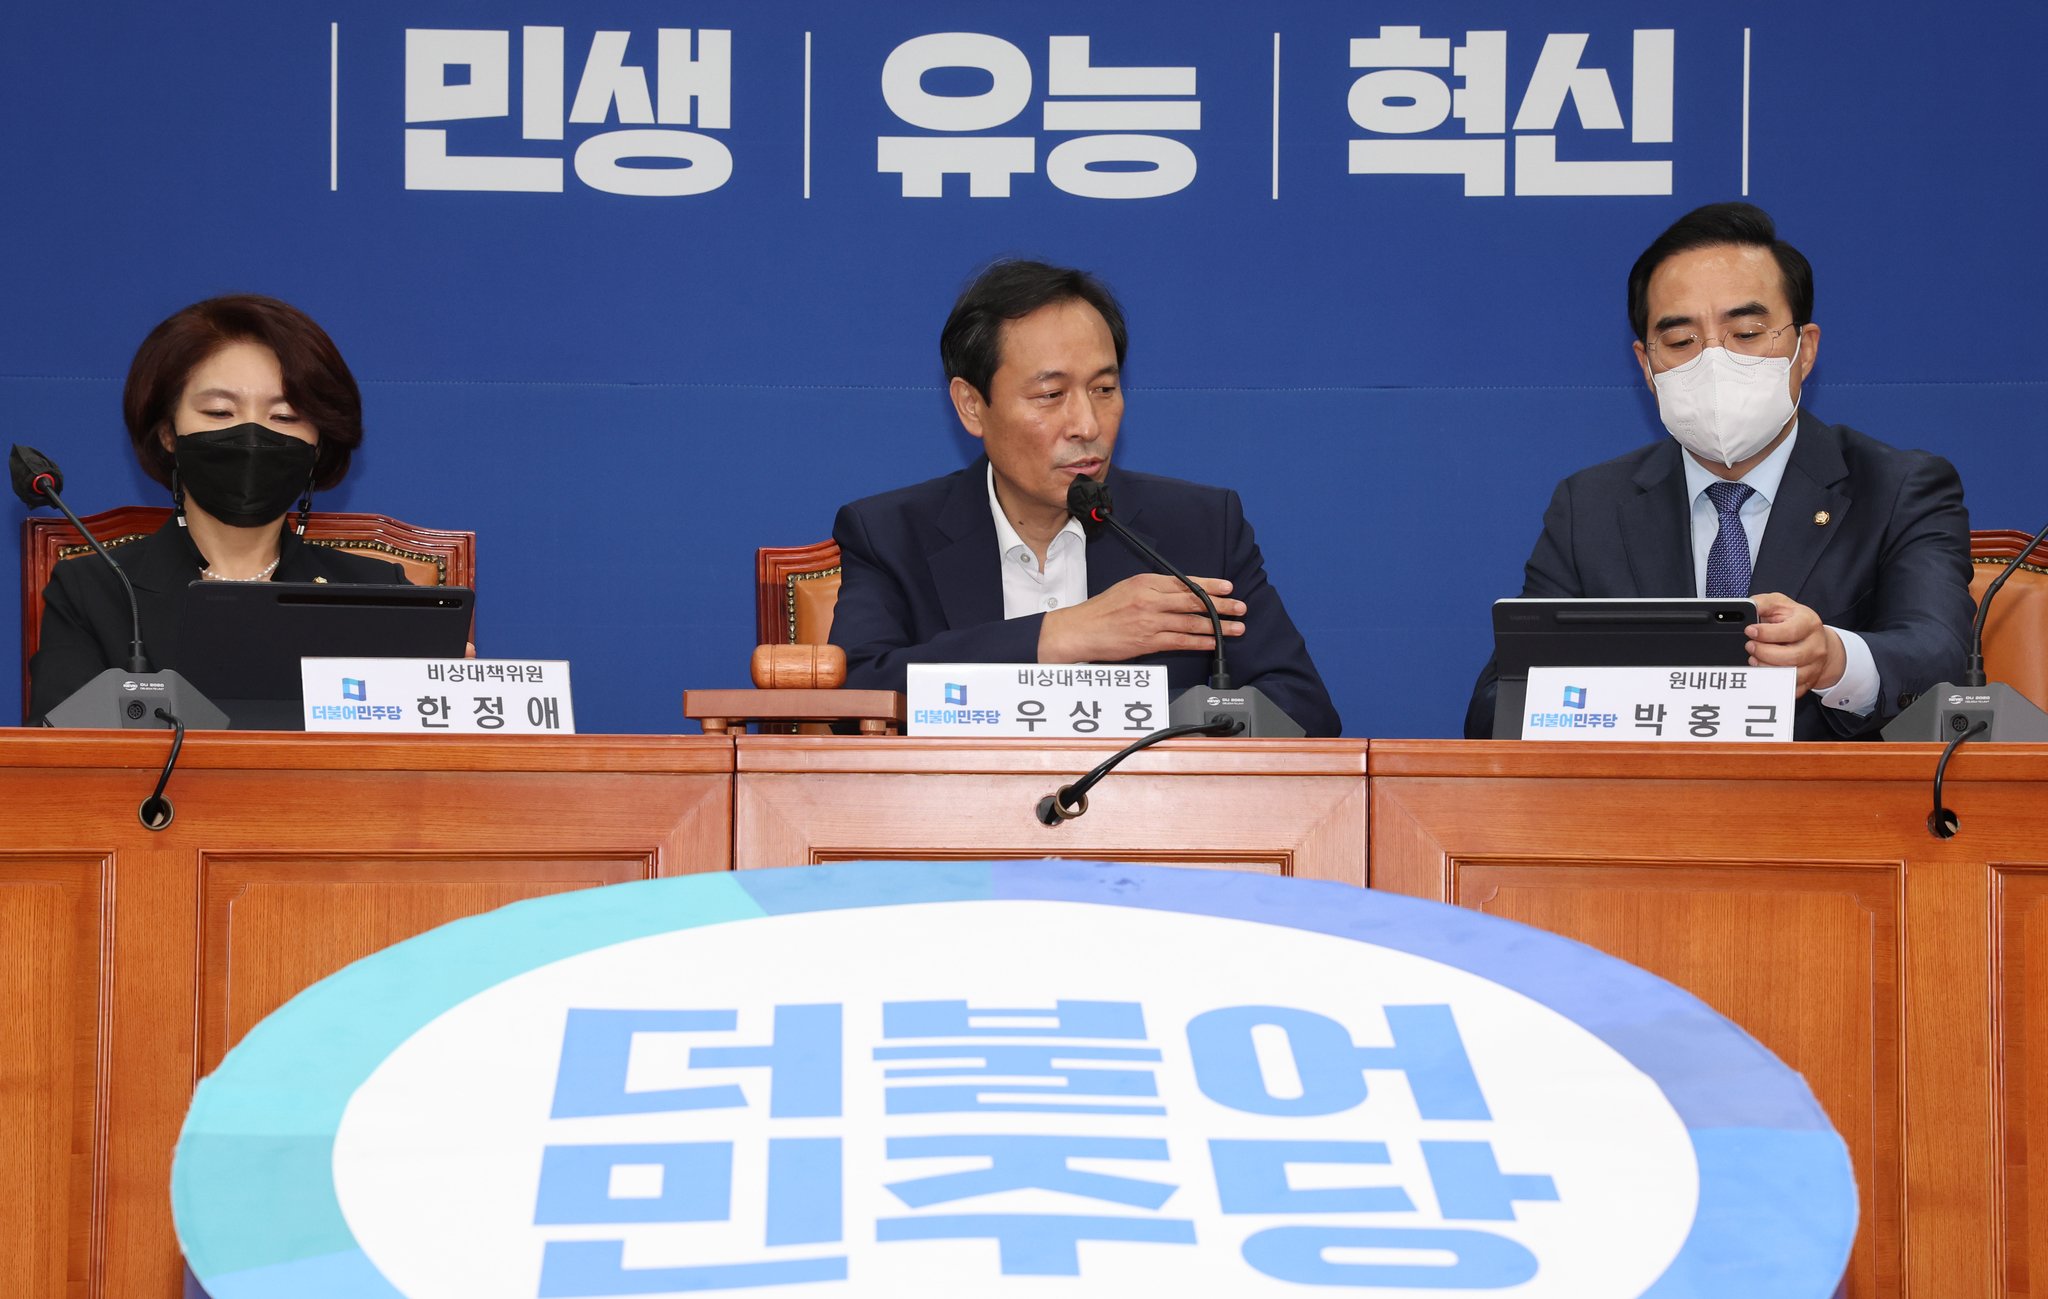 우상호 위원장이 모두발언을 생략한 뒤 박홍근 원내대표에게 발언권을 넘기고 있다. 김상선 기자